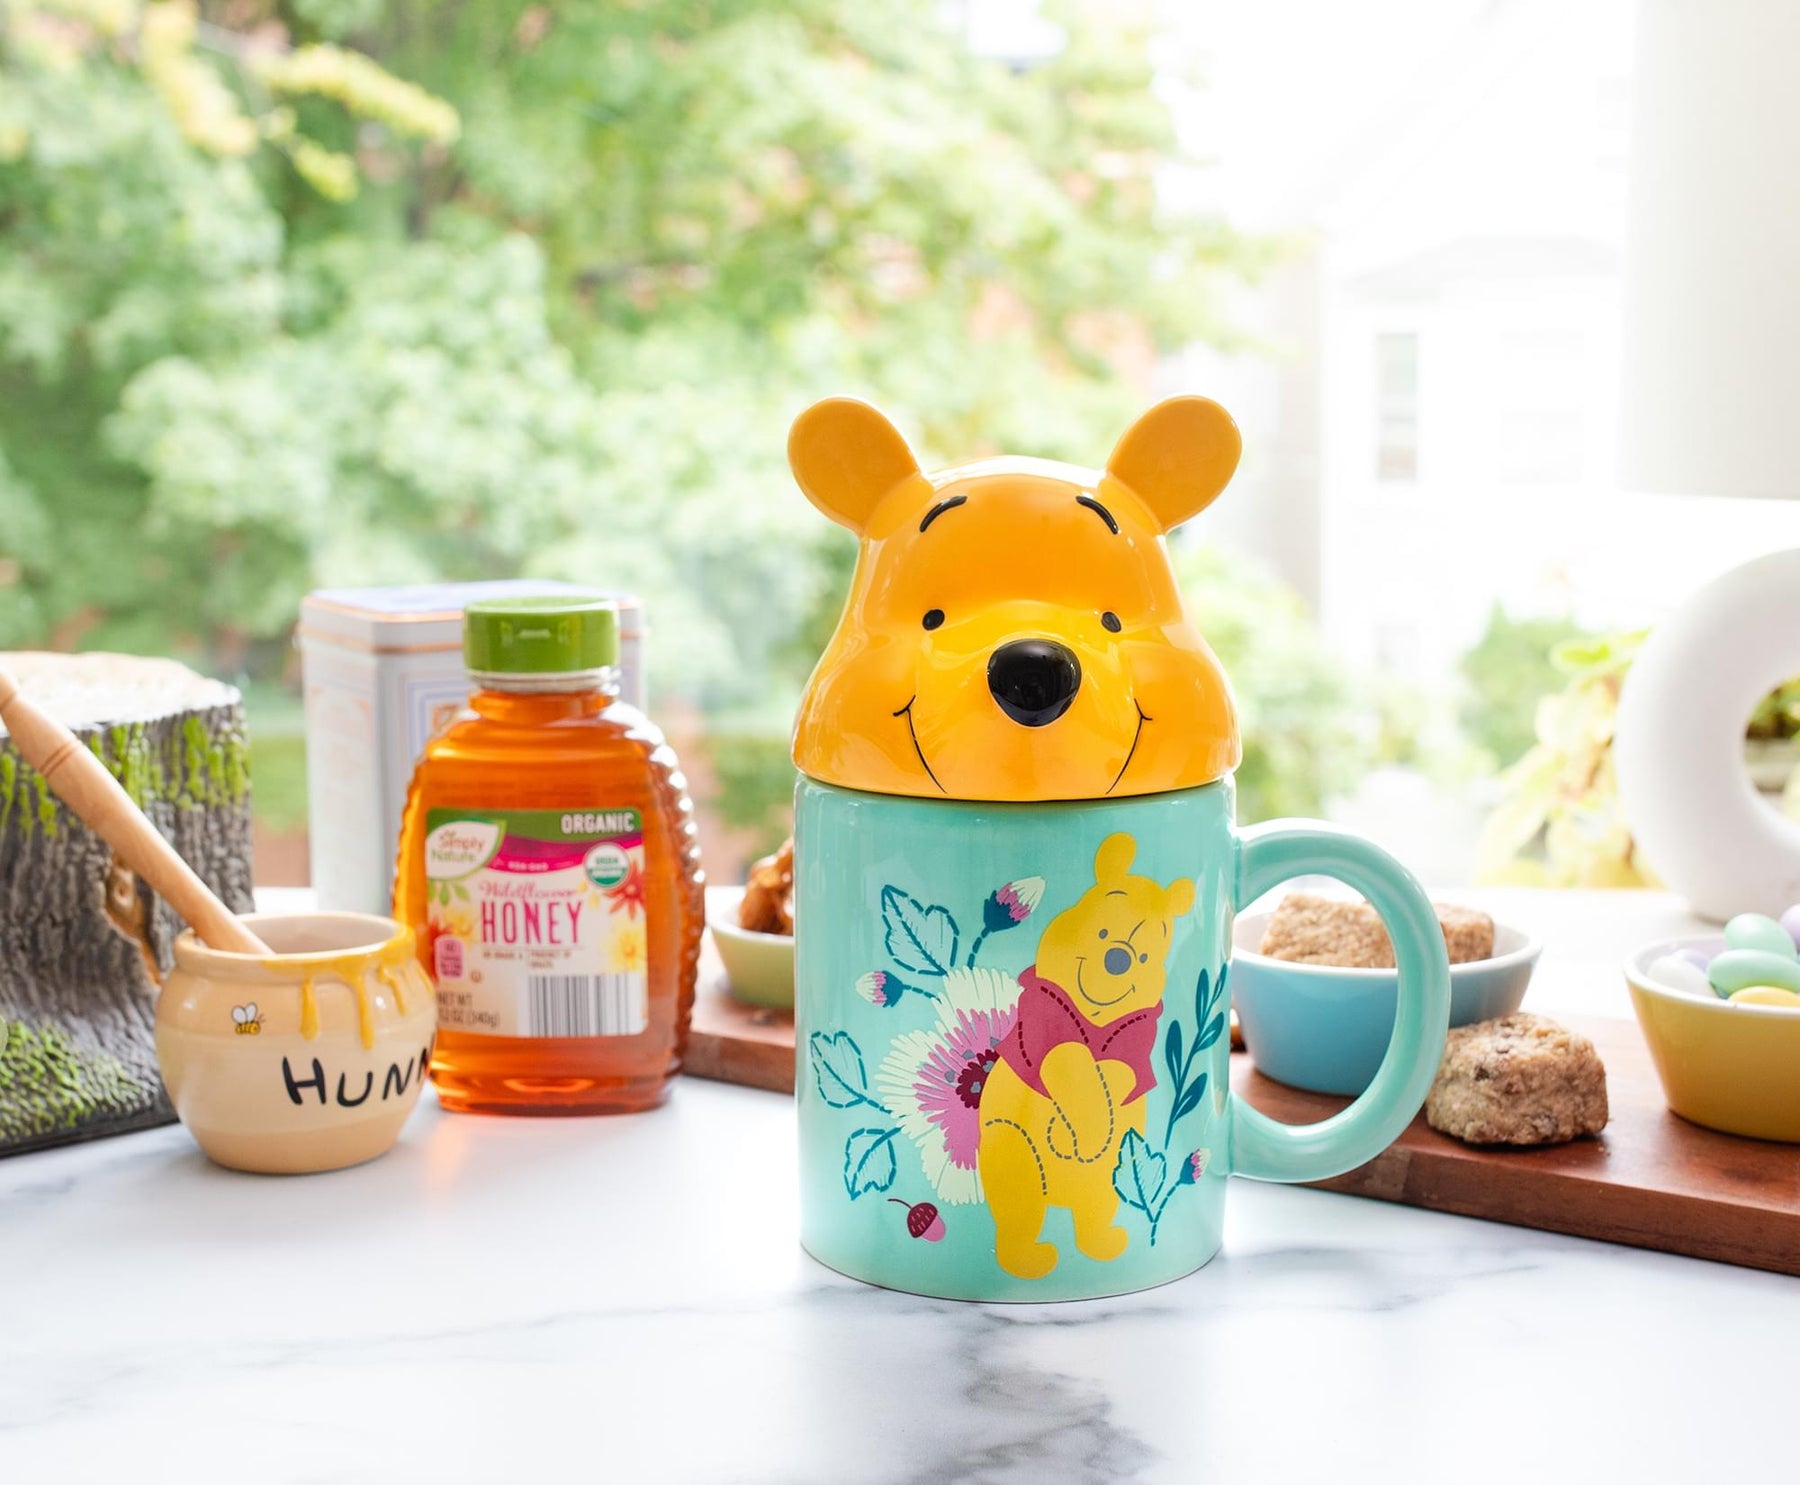 Disney Winnie the Pooh Pooh Mug